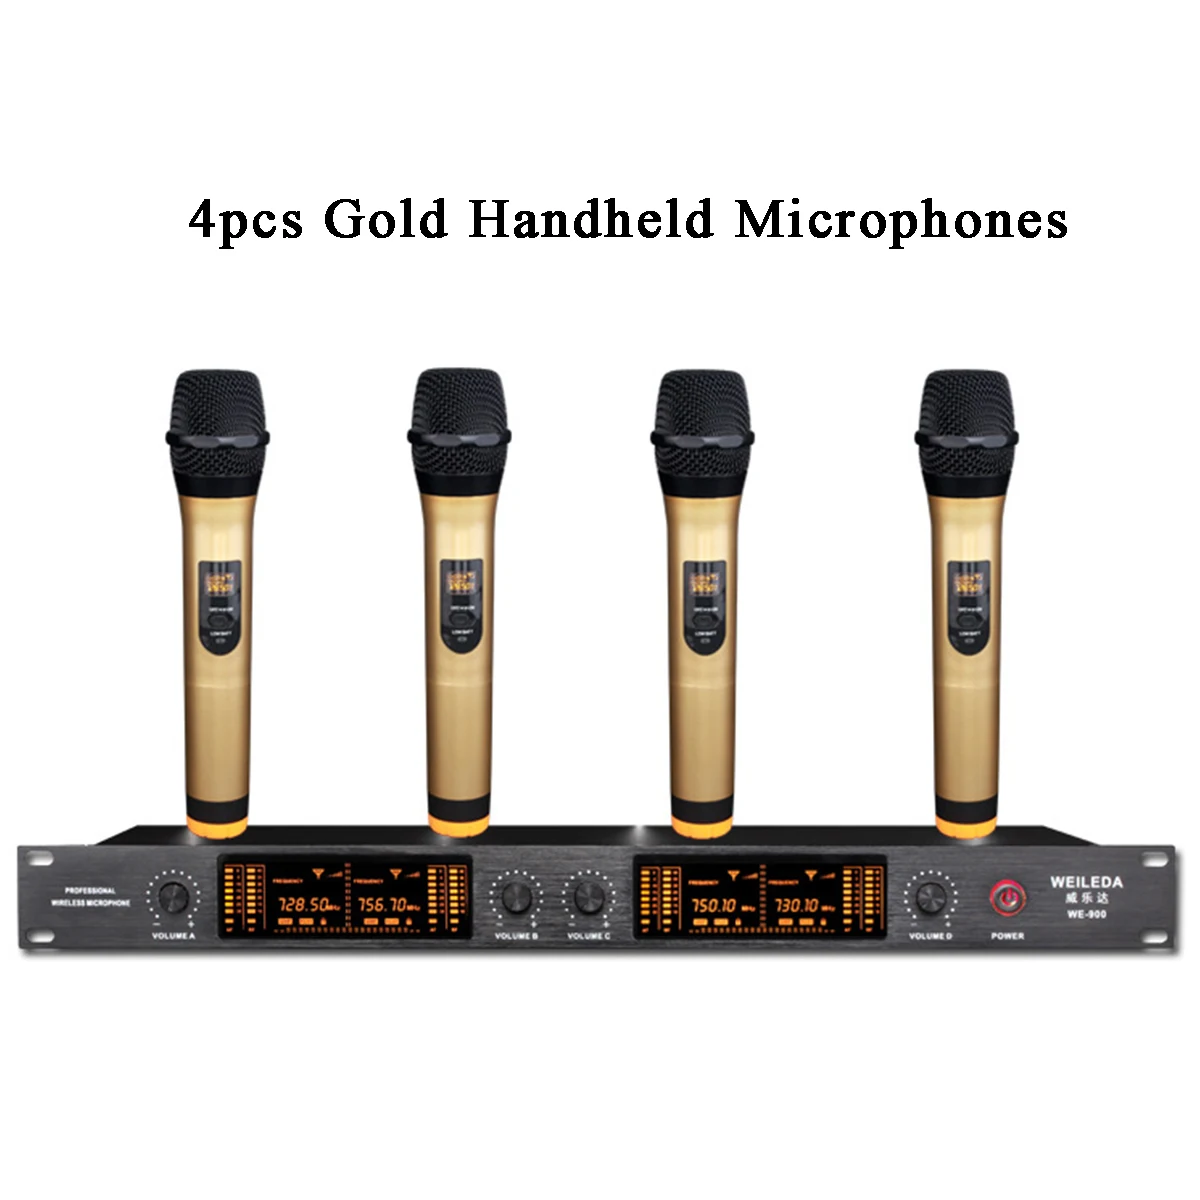 110-220 В УВЧ 4 канала профессиональный ЖК беспроводной микрофон Беспроводная система головной микрофон светодиодный дисплей чувствительный для KTV - Цвет: Golden